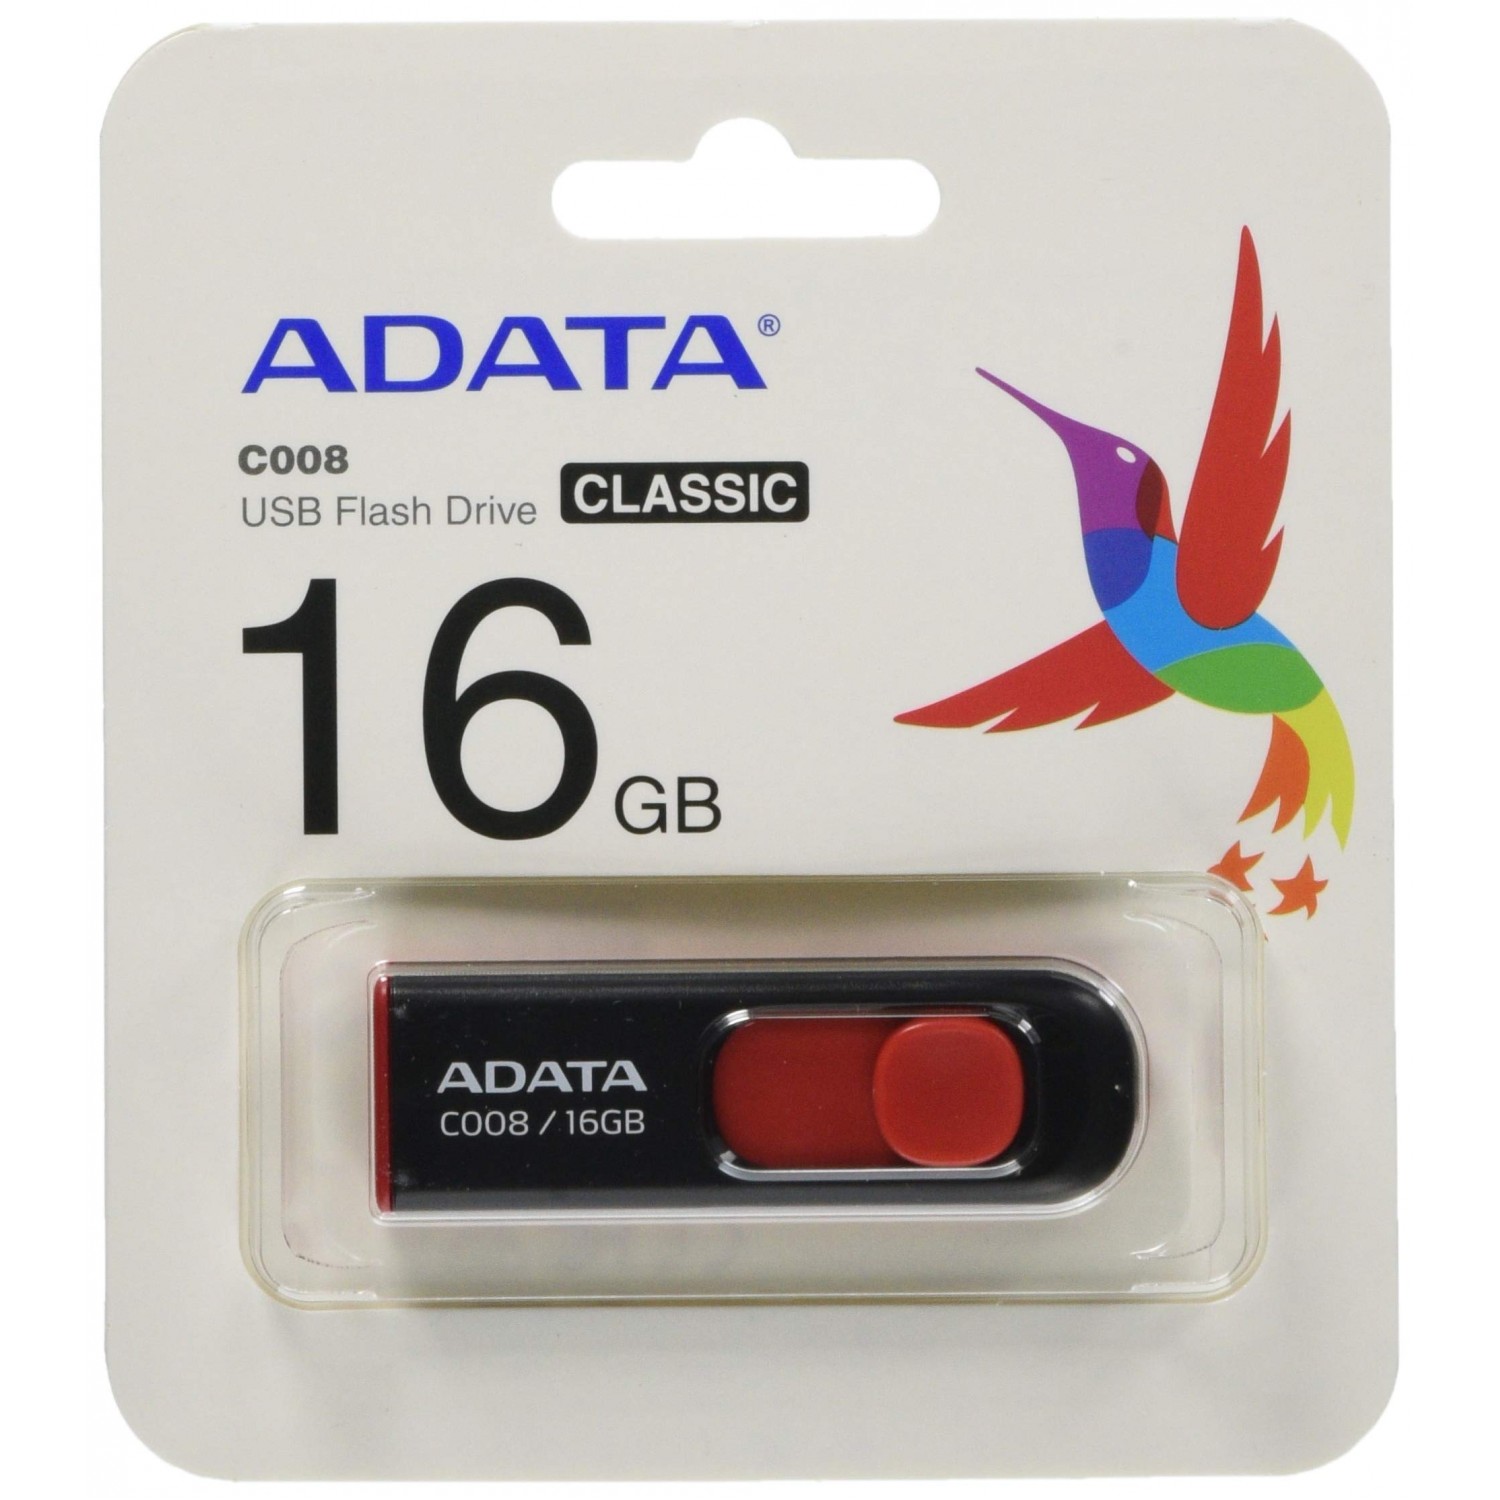 فلش مموری ADATA C008 - 16GB - Black/Red-2